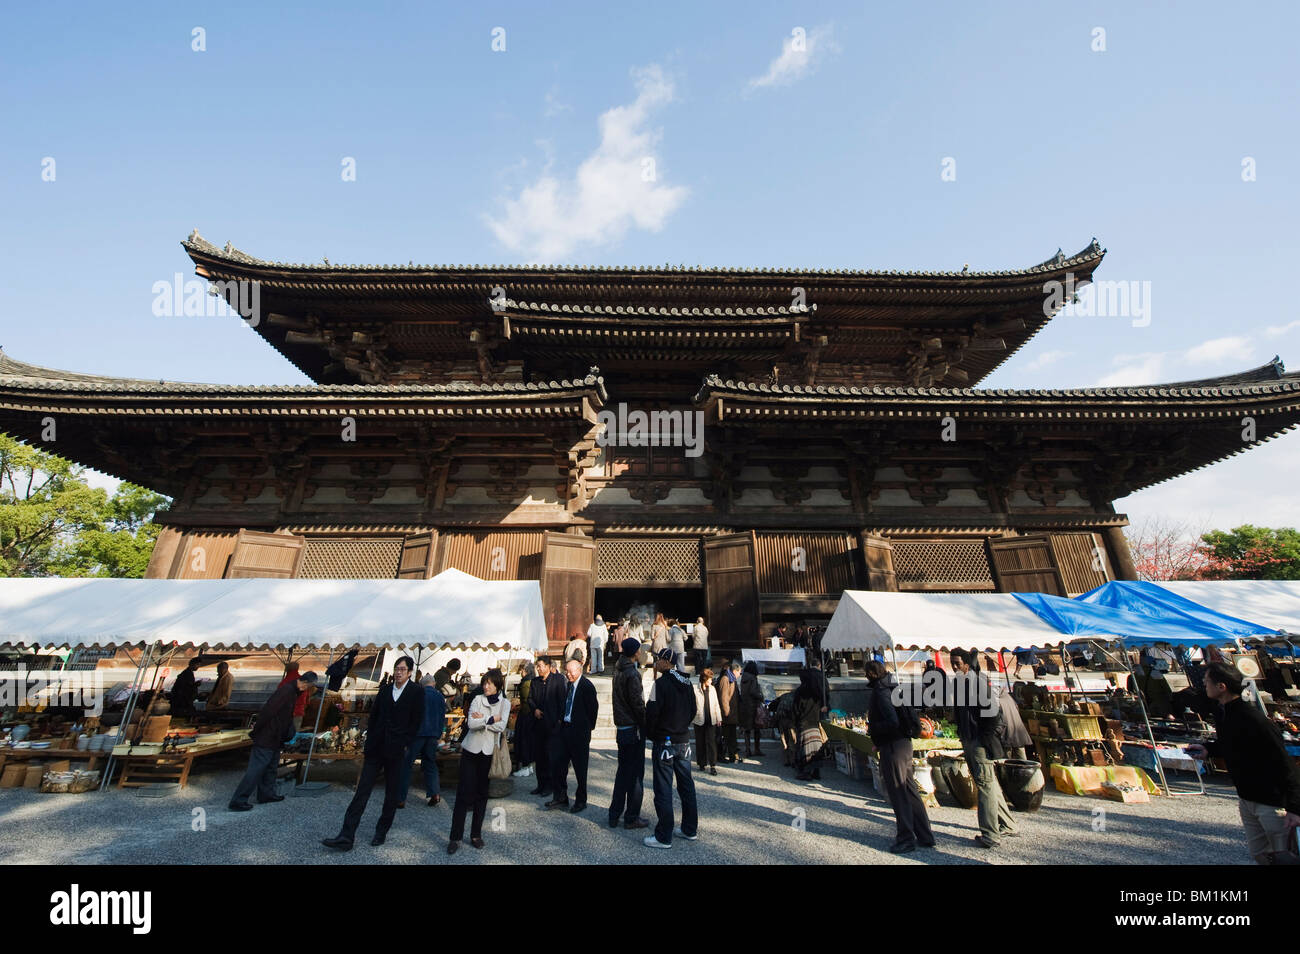 A ji (templo Toji) que datan de 794, y el mercado mensual, Kyoto, Japón, Asia Foto de stock